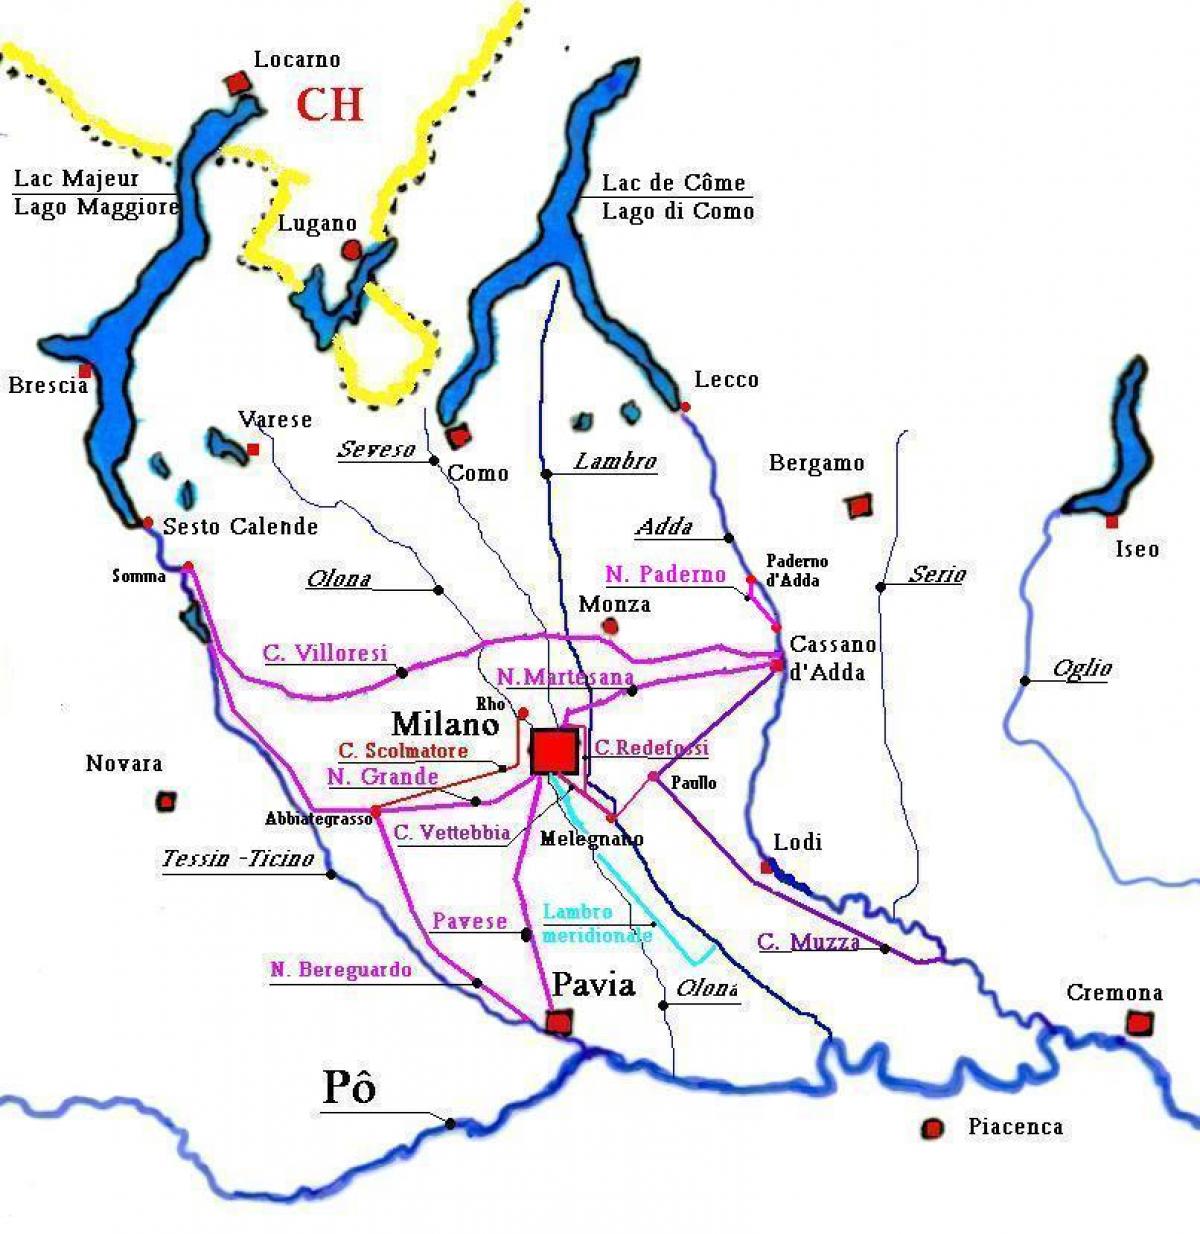 Karte von Mailand navigli district